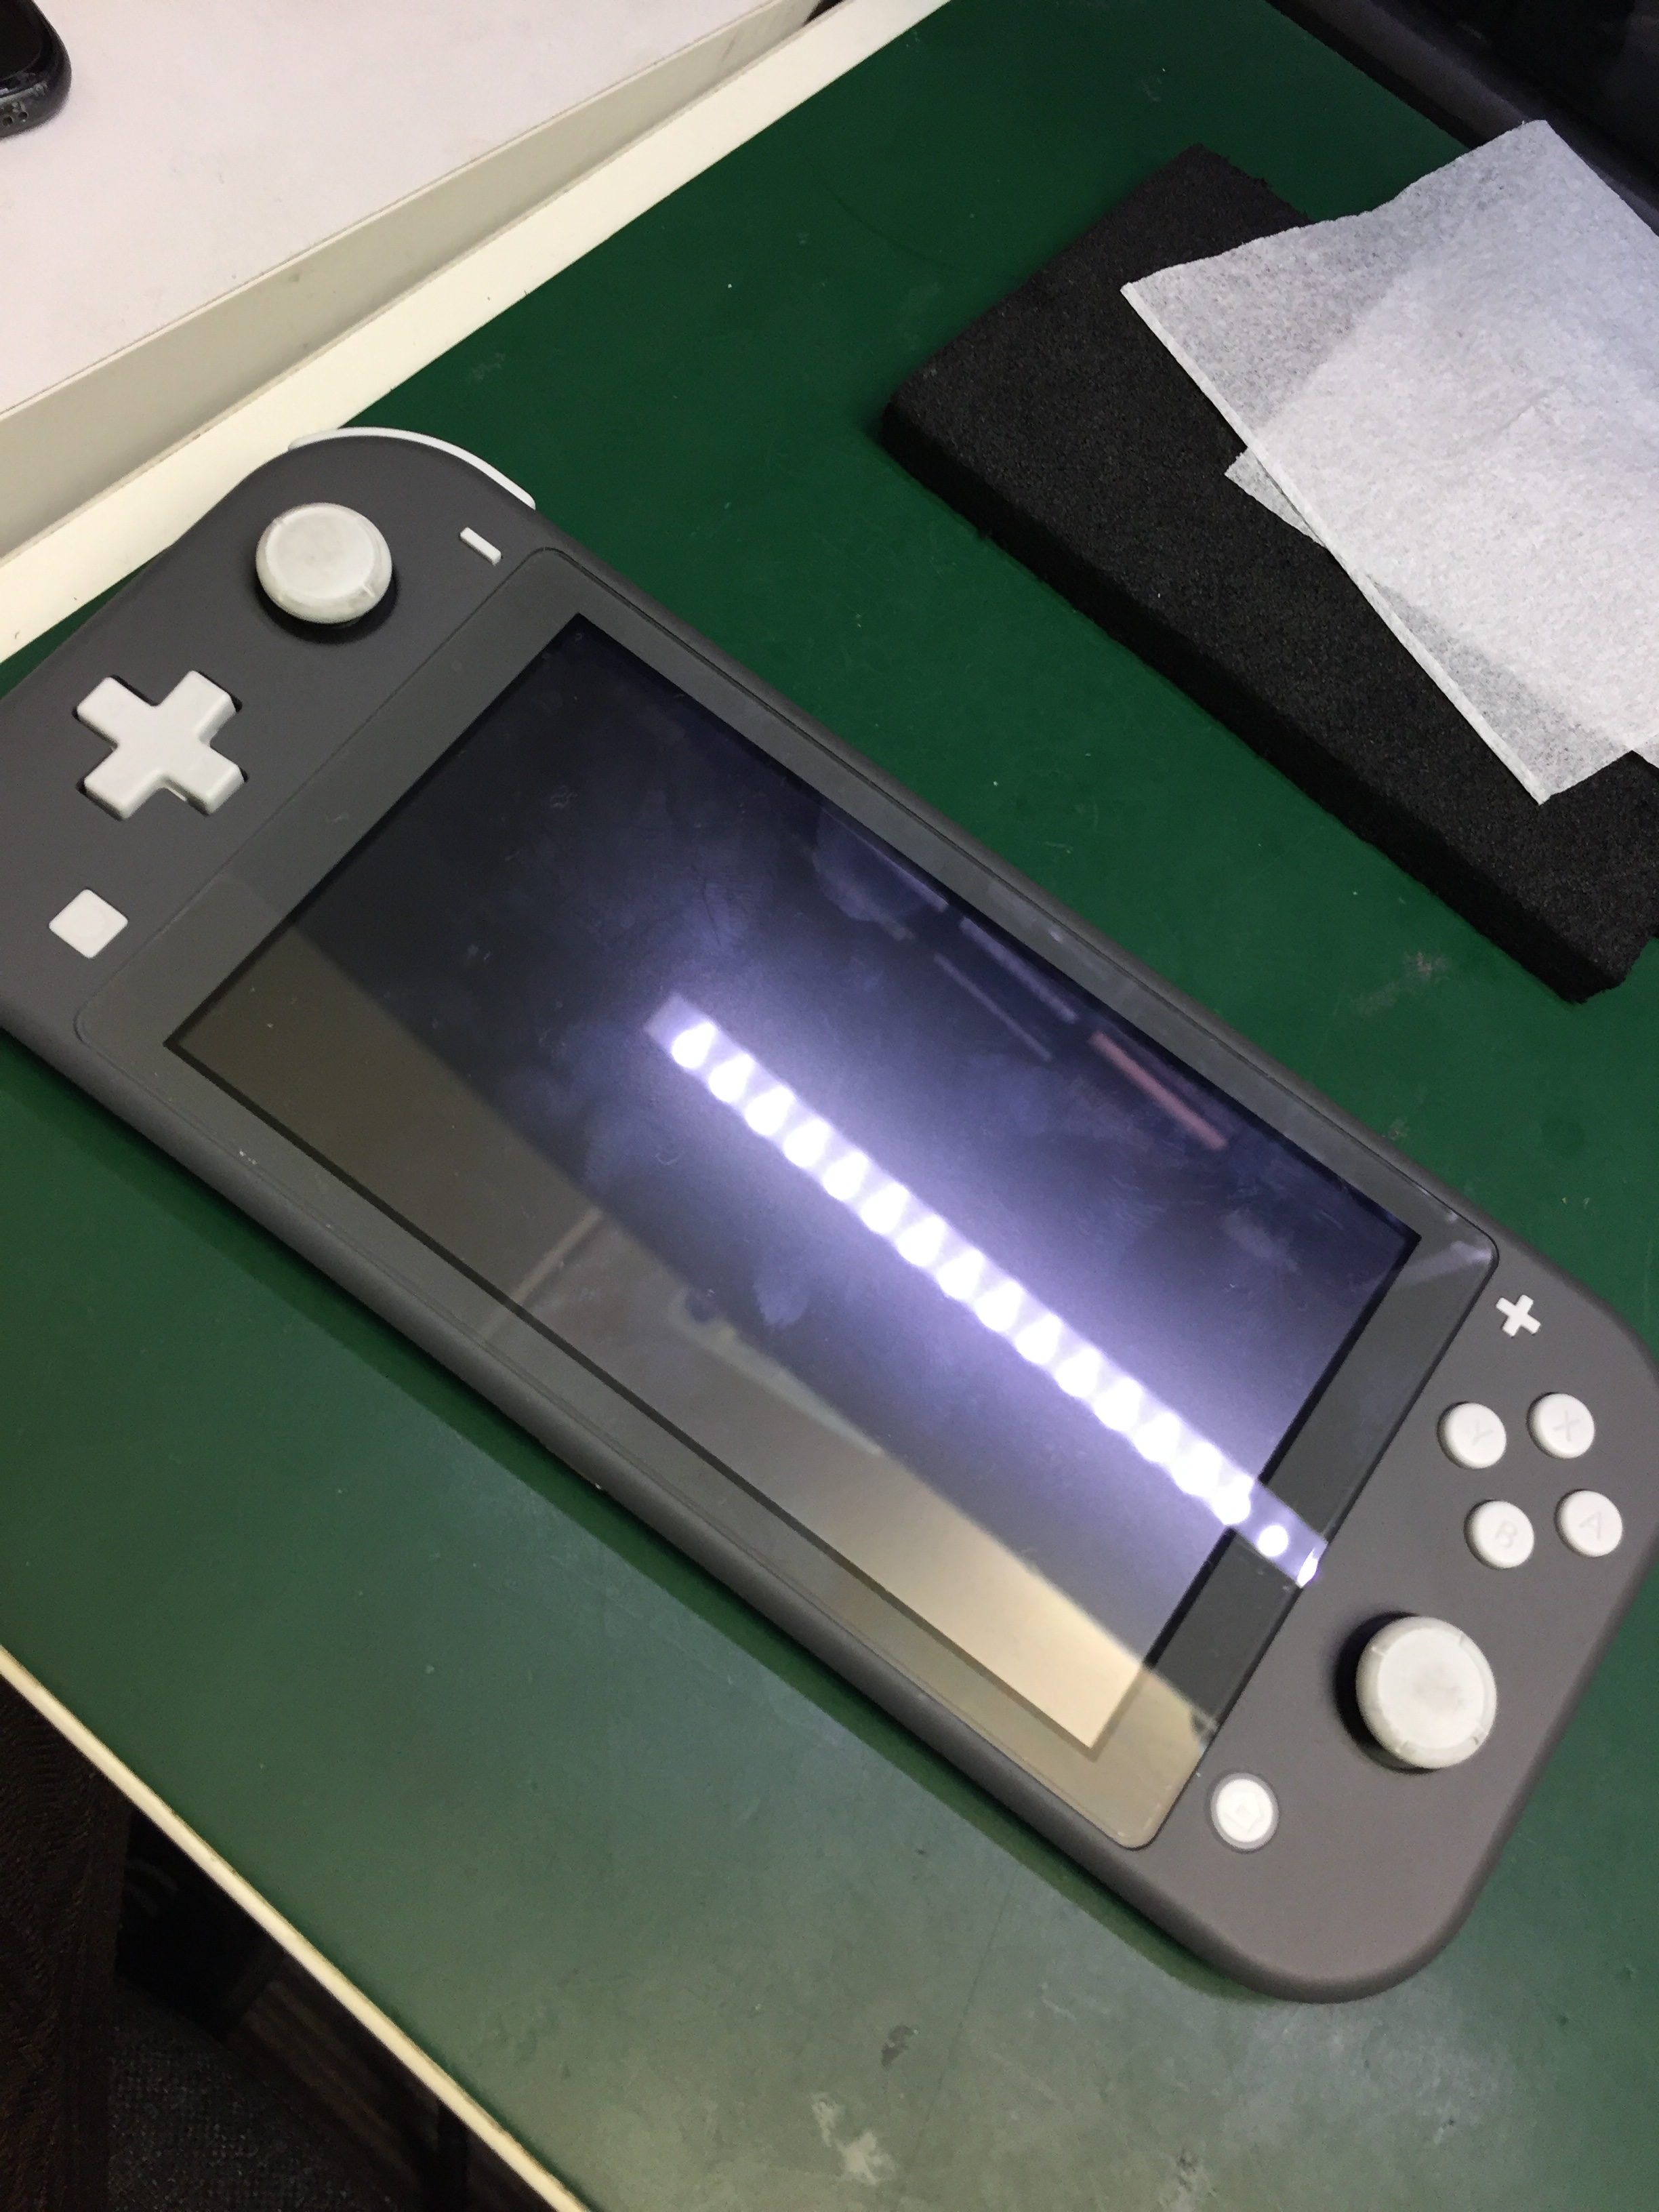 お風呂でポケモンをやっていたらうっかり落としてしまった Nintendo Switch Liteの水没復旧修理を行いました Nintendo3ds Switch Psp 修理のゲームホスピタル Nintendo3ds ニンテンドーds Psp Switch 修理